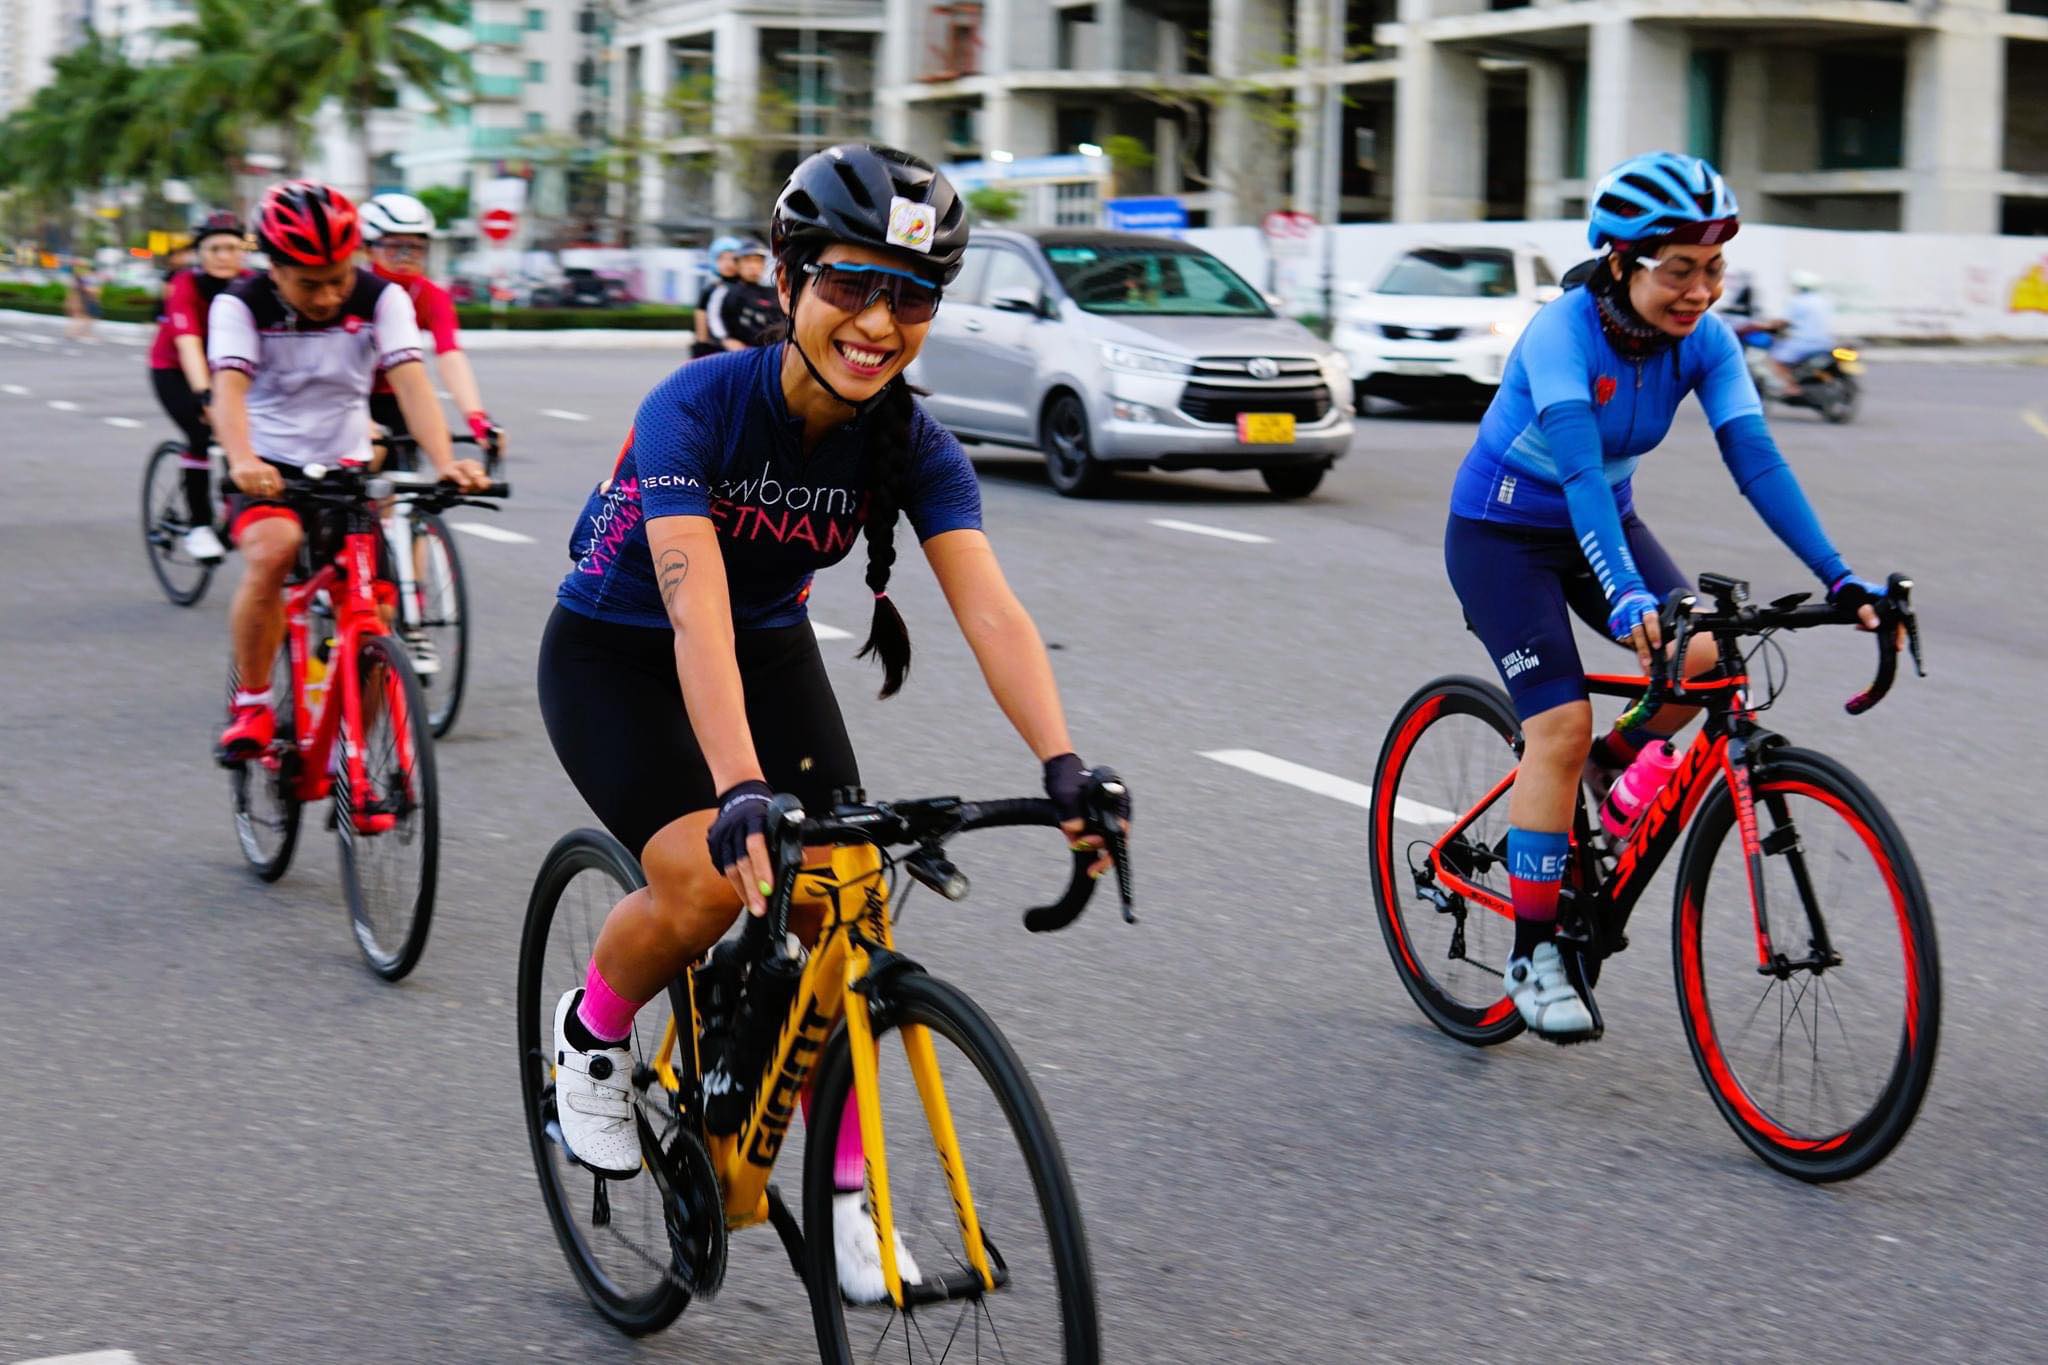 Bóng hồng đạp xe 24 tiếng không ngủ, chinh phục thành công gần 550km - Sài  Gòn Tiếp Thị